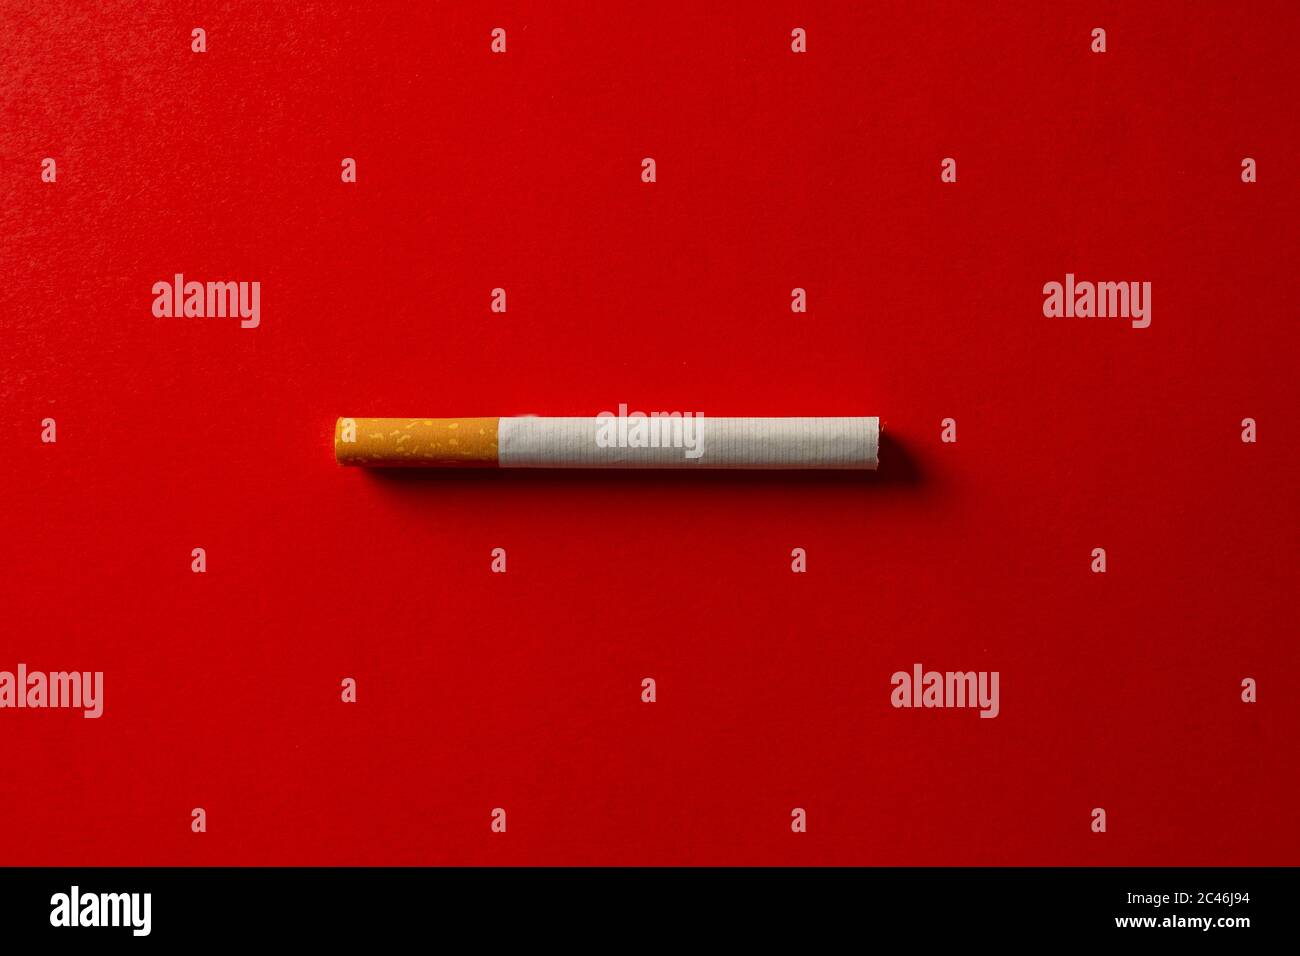 Zigarette auf rotem Hintergrund isoliert. Konzeptuelles Bild mit Platz für Text. Werbung Stil des Rauchens zu stoppen, verursacht Rauchen Krankheit, Gefahren von Stockfoto